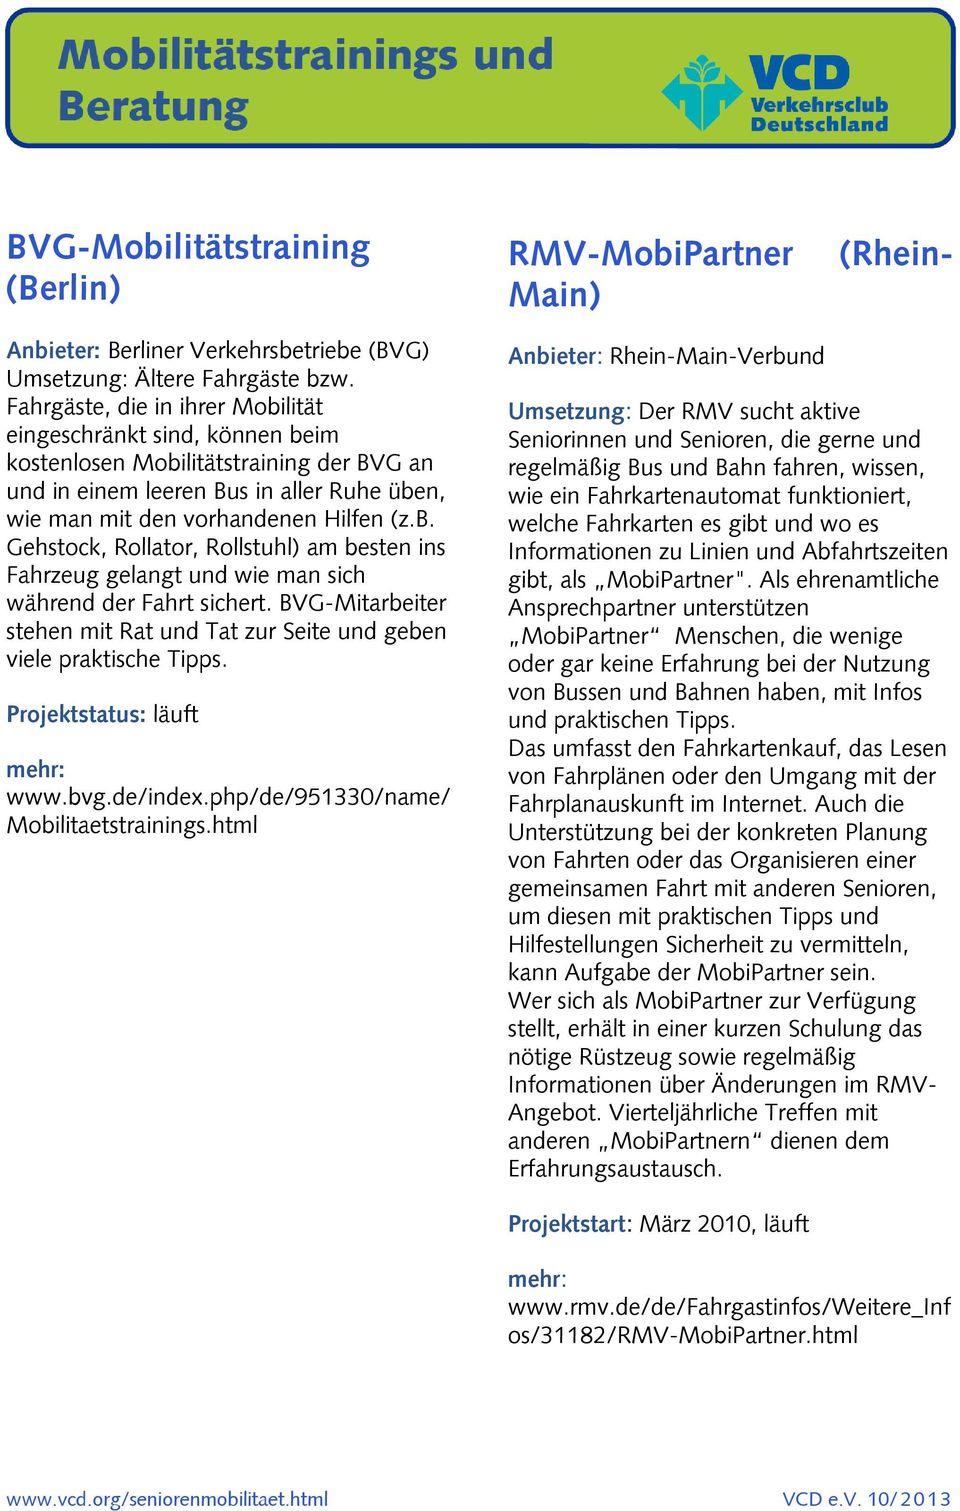 BVG-Mitarbeiter stehen mit Rat und Tat zur Seite und geben viele praktische Tipps. www.bvg.de/index.php/de/951330/name/ Mobilitaetstrainings.